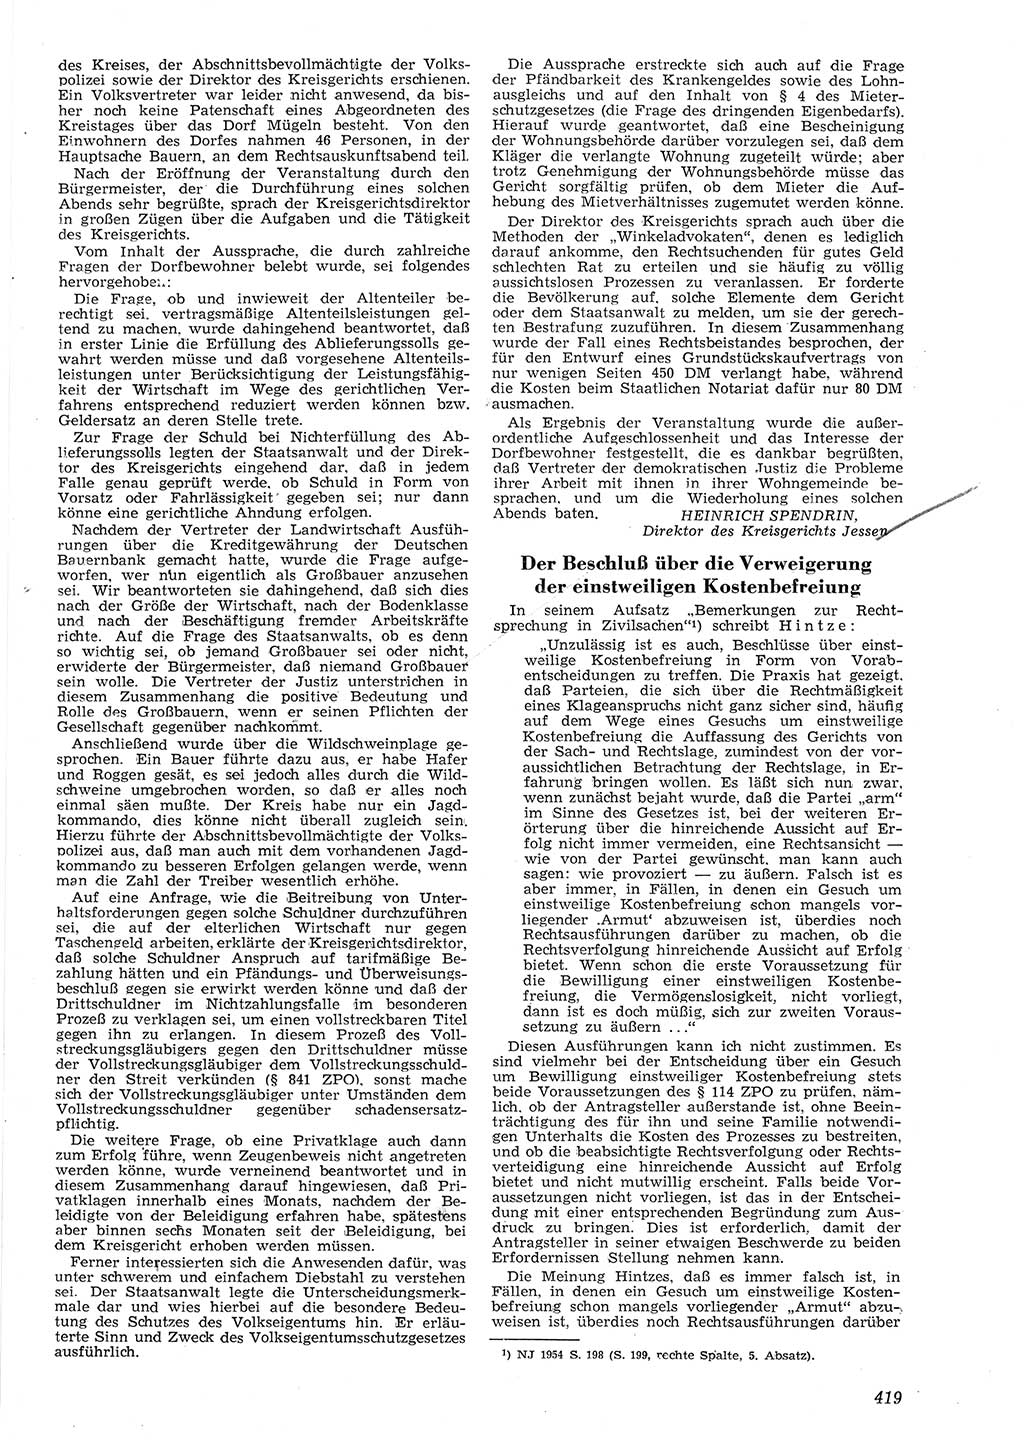 Neue Justiz (NJ), Zeitschrift für Recht und Rechtswissenschaft [Deutsche Demokratische Republik (DDR)], 8. Jahrgang 1954, Seite 419 (NJ DDR 1954, S. 419)